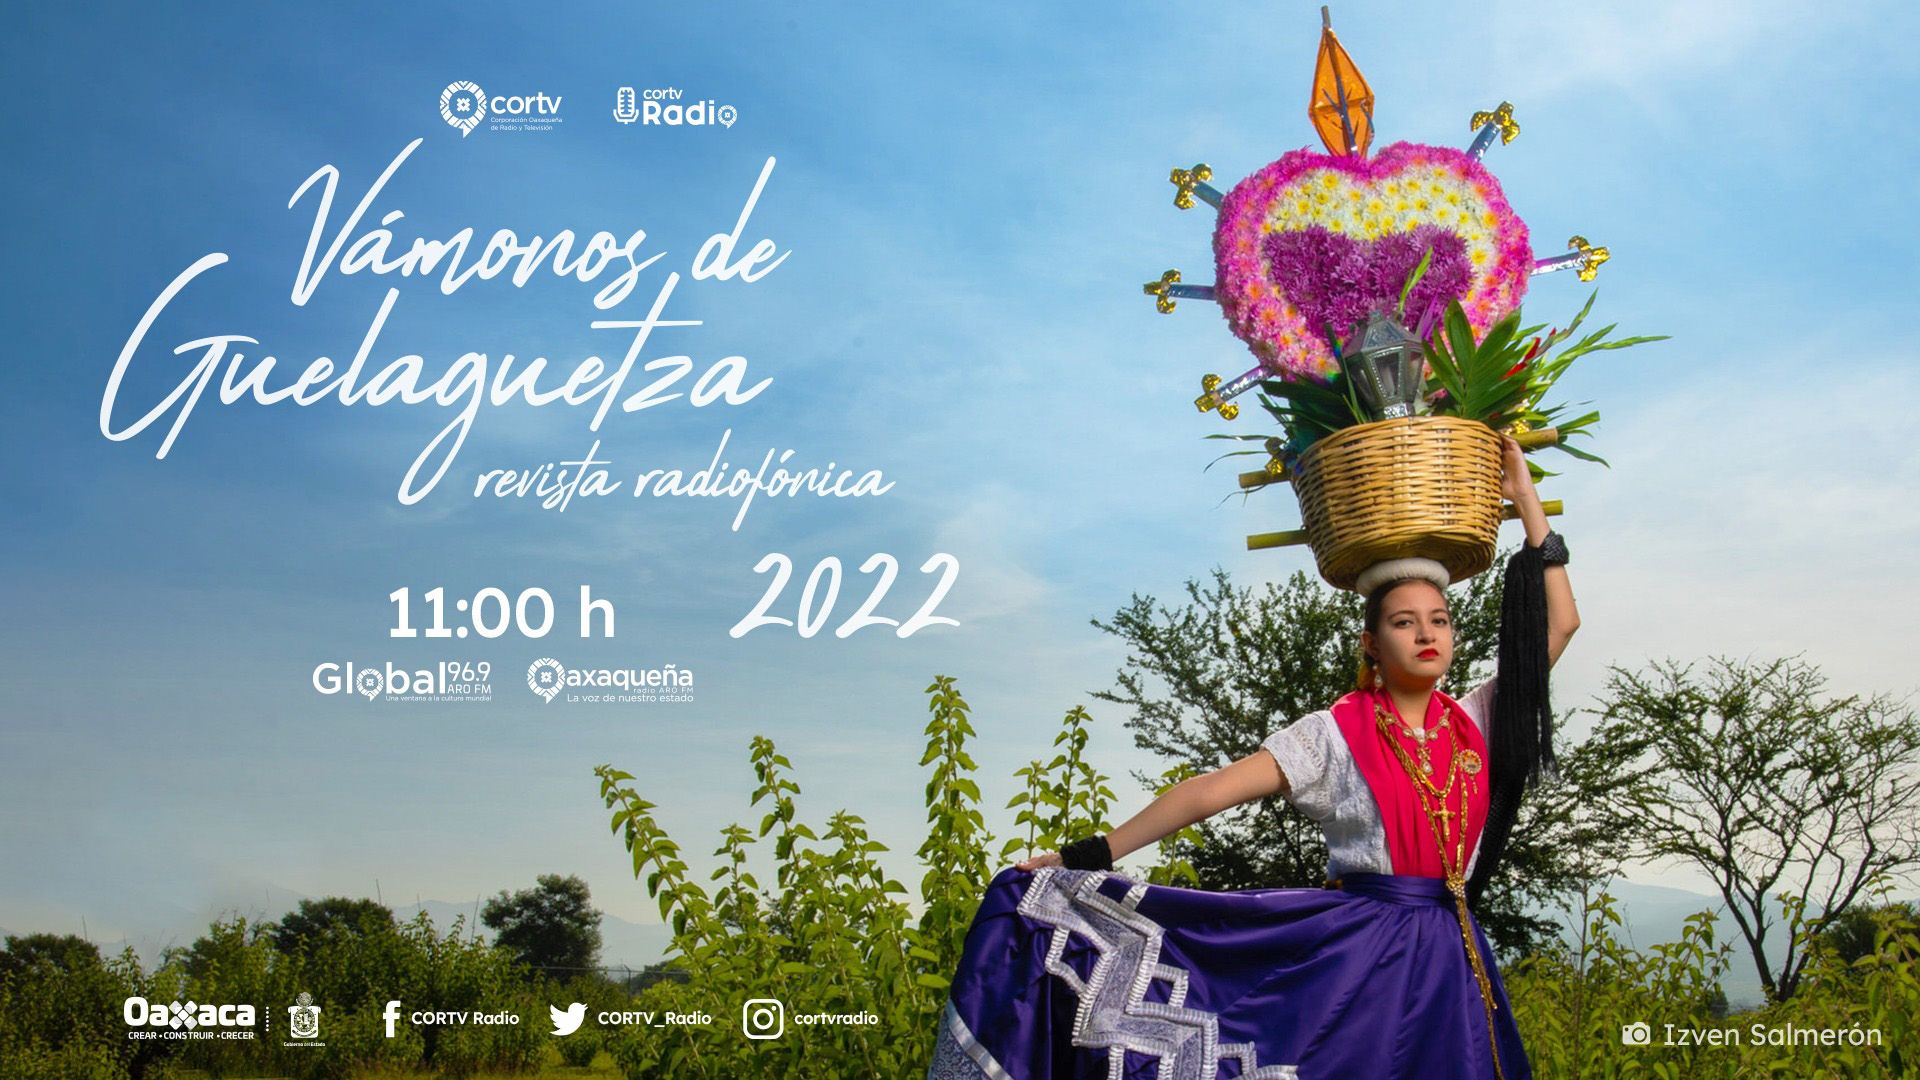 Recorramos Oaxaca con “Vámonos de Guelaguetza 2022” de Cortv Radio